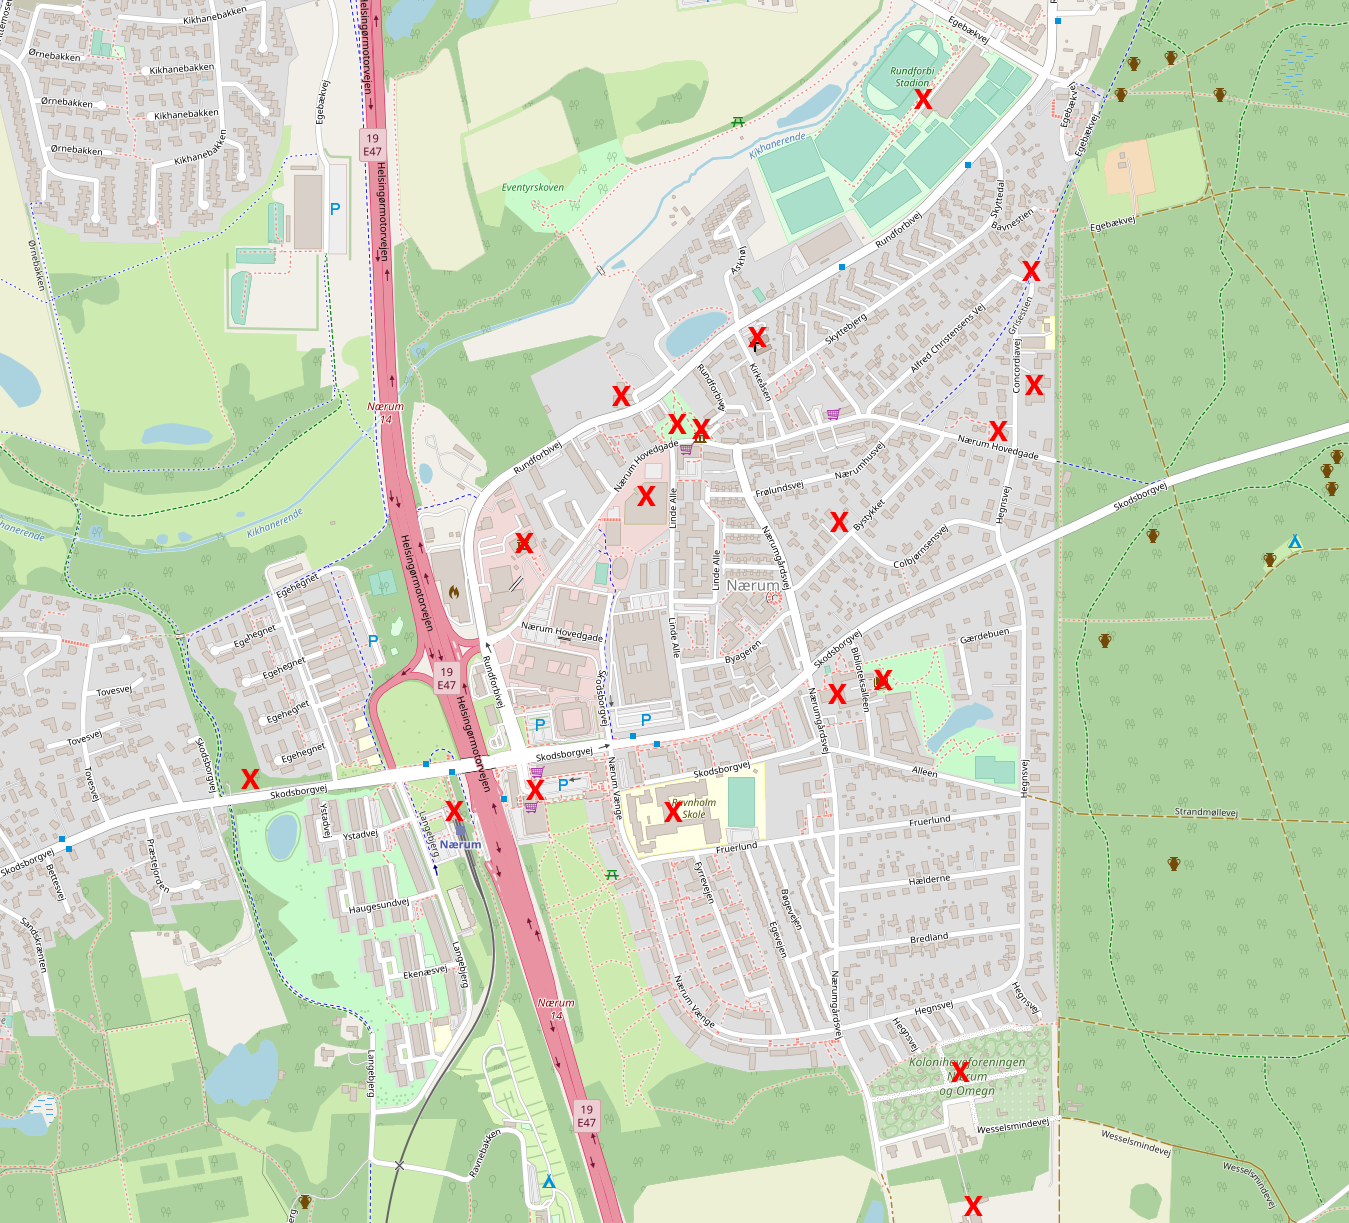 Interaktivt kort over små historier i Nærum